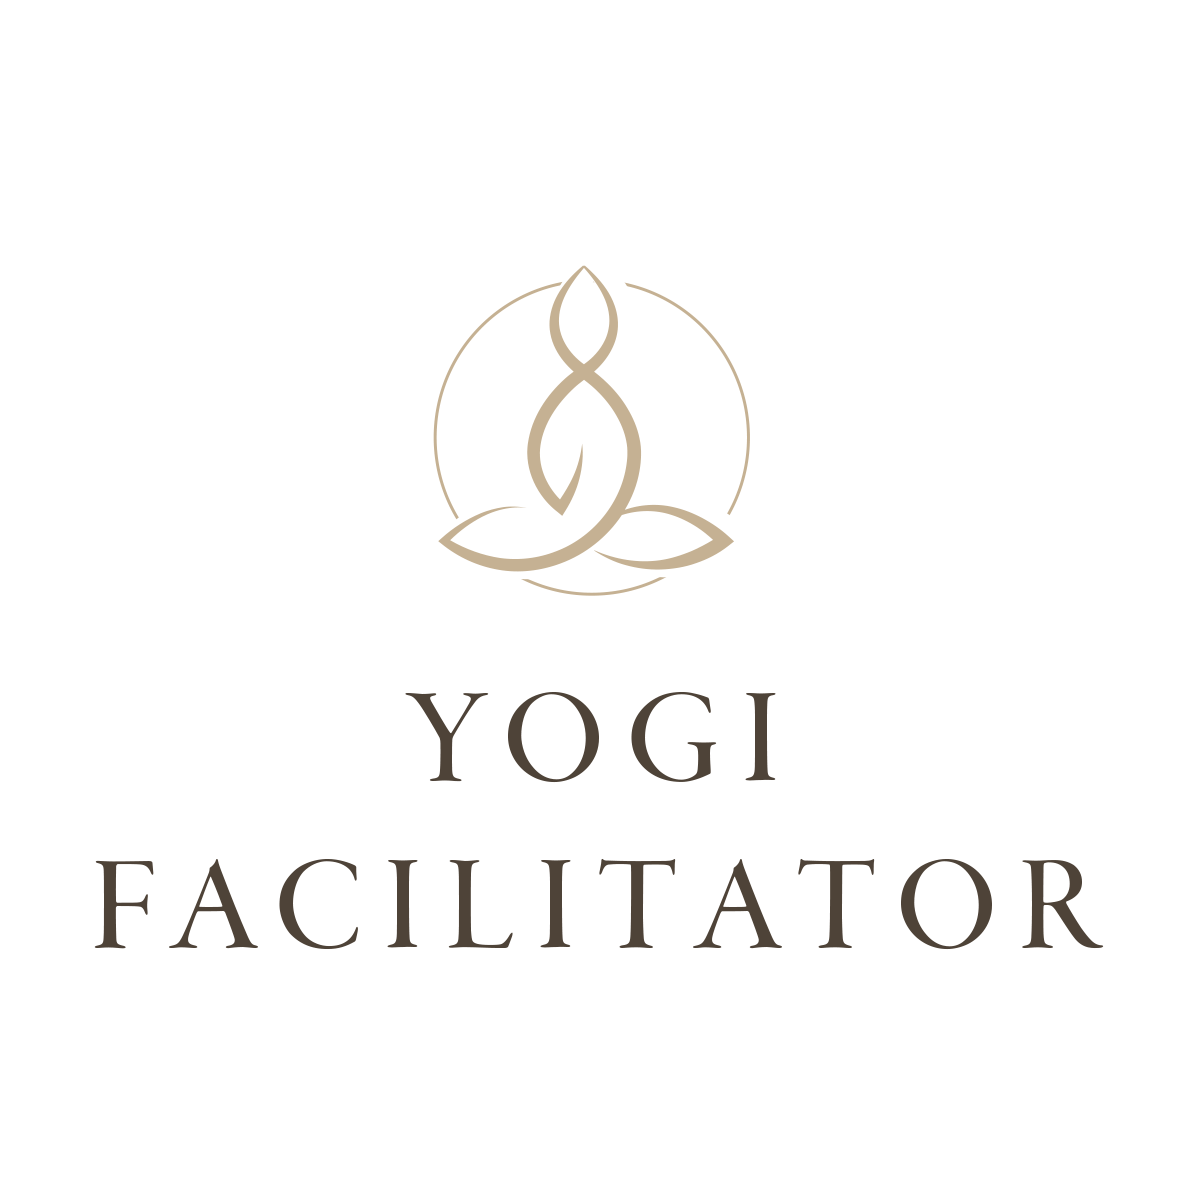 Yogi Logo - The Yogi Facilitator Leadership Training - Kristin